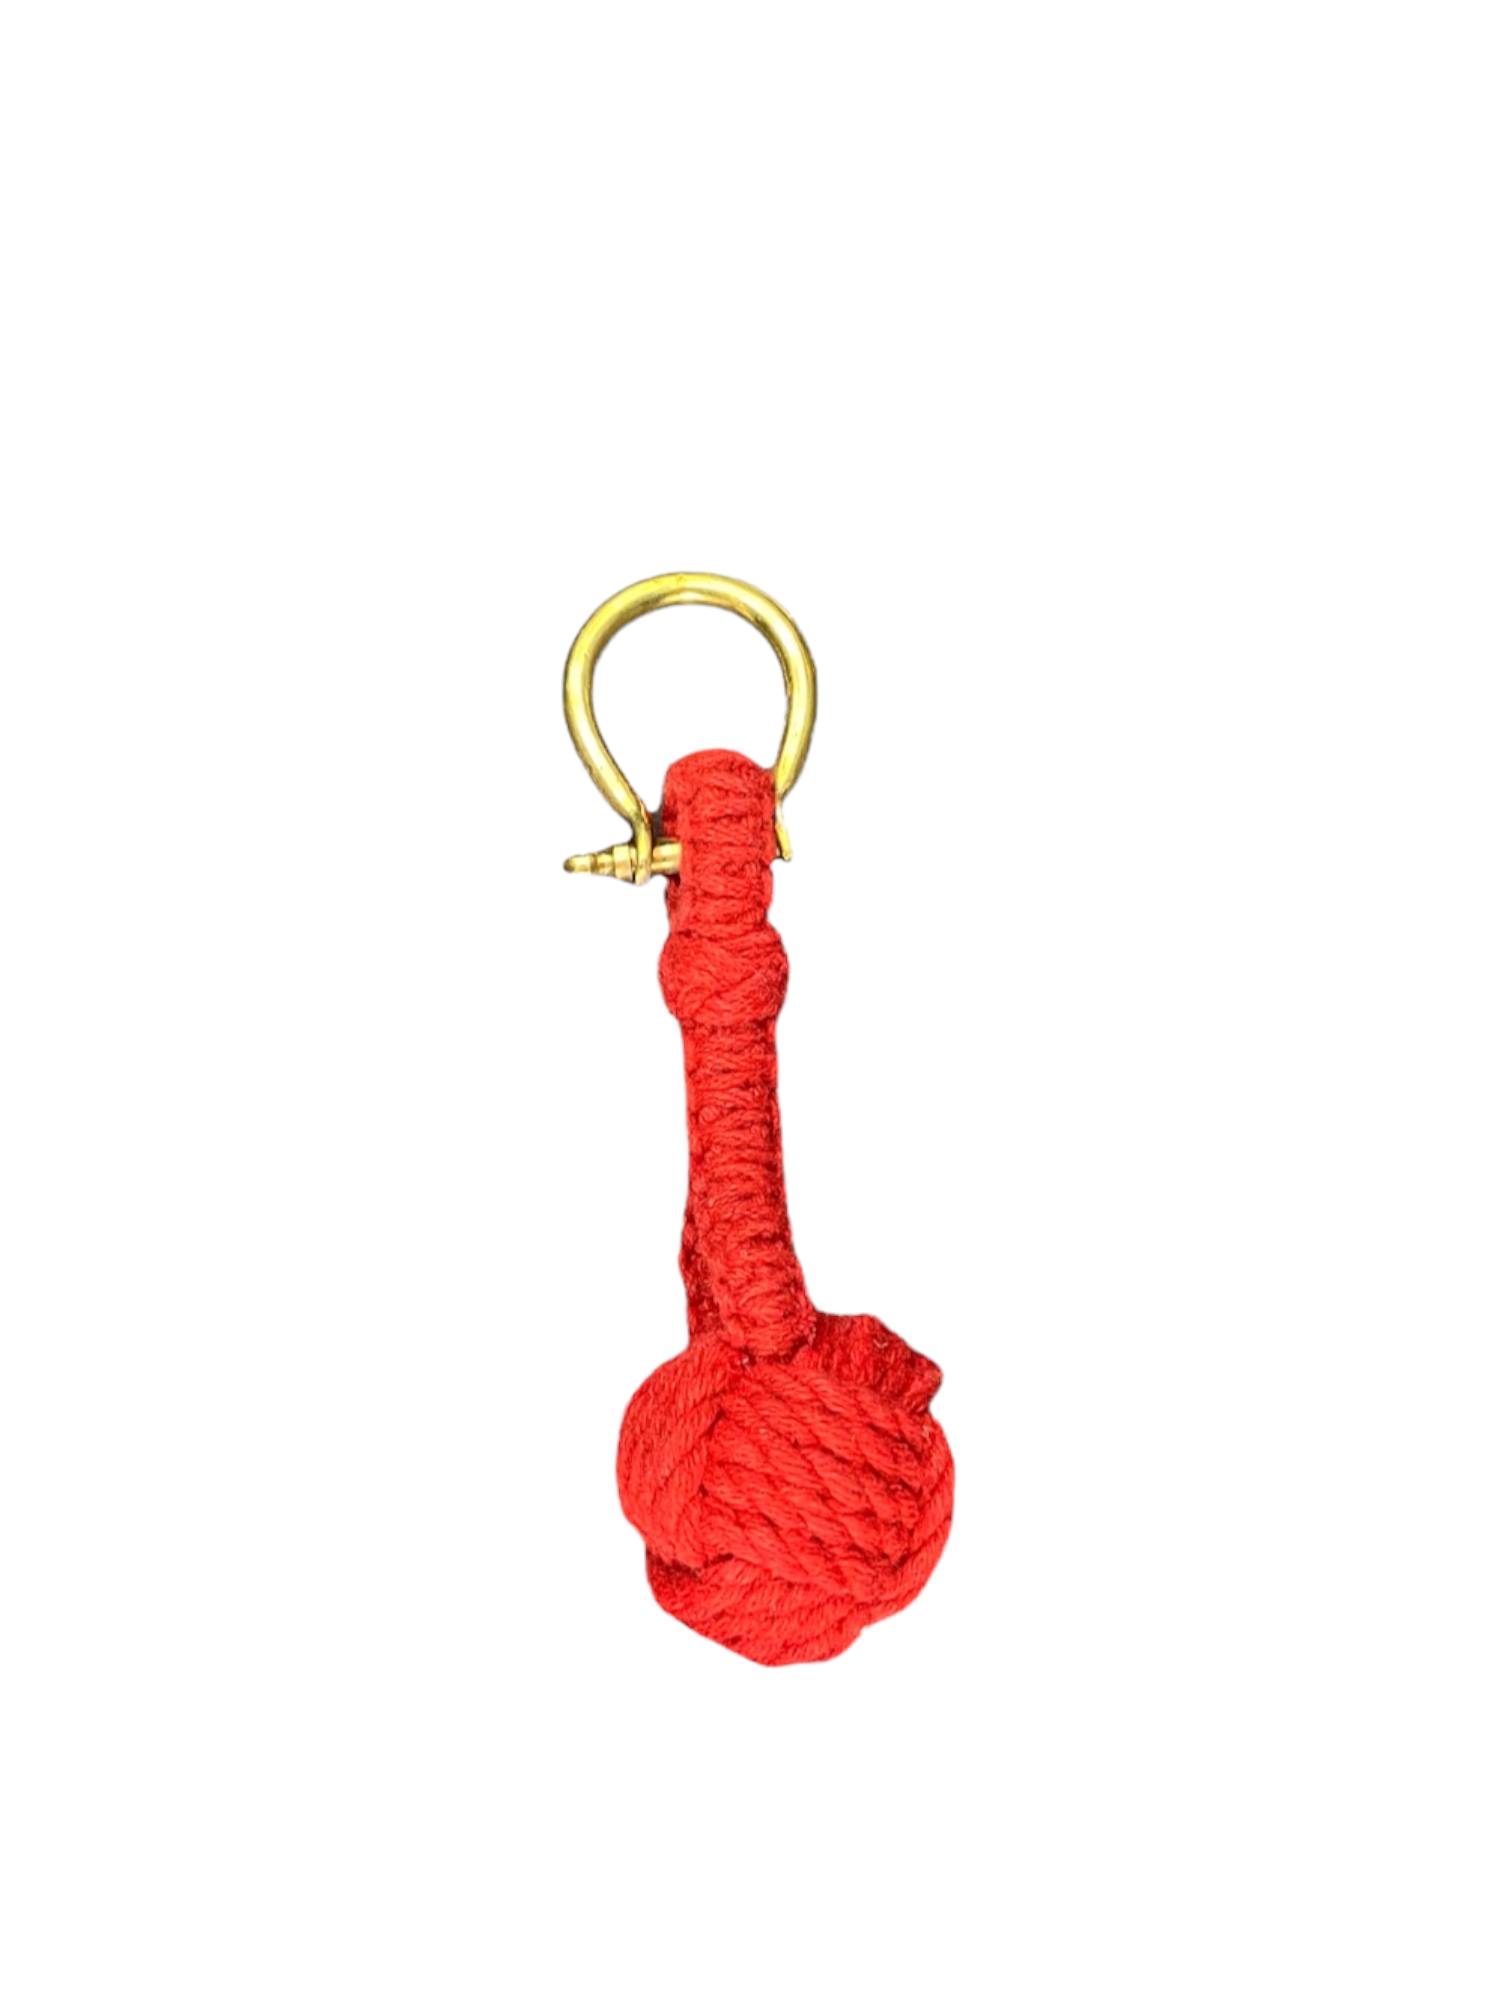 Monkey Fist Keychain - Red